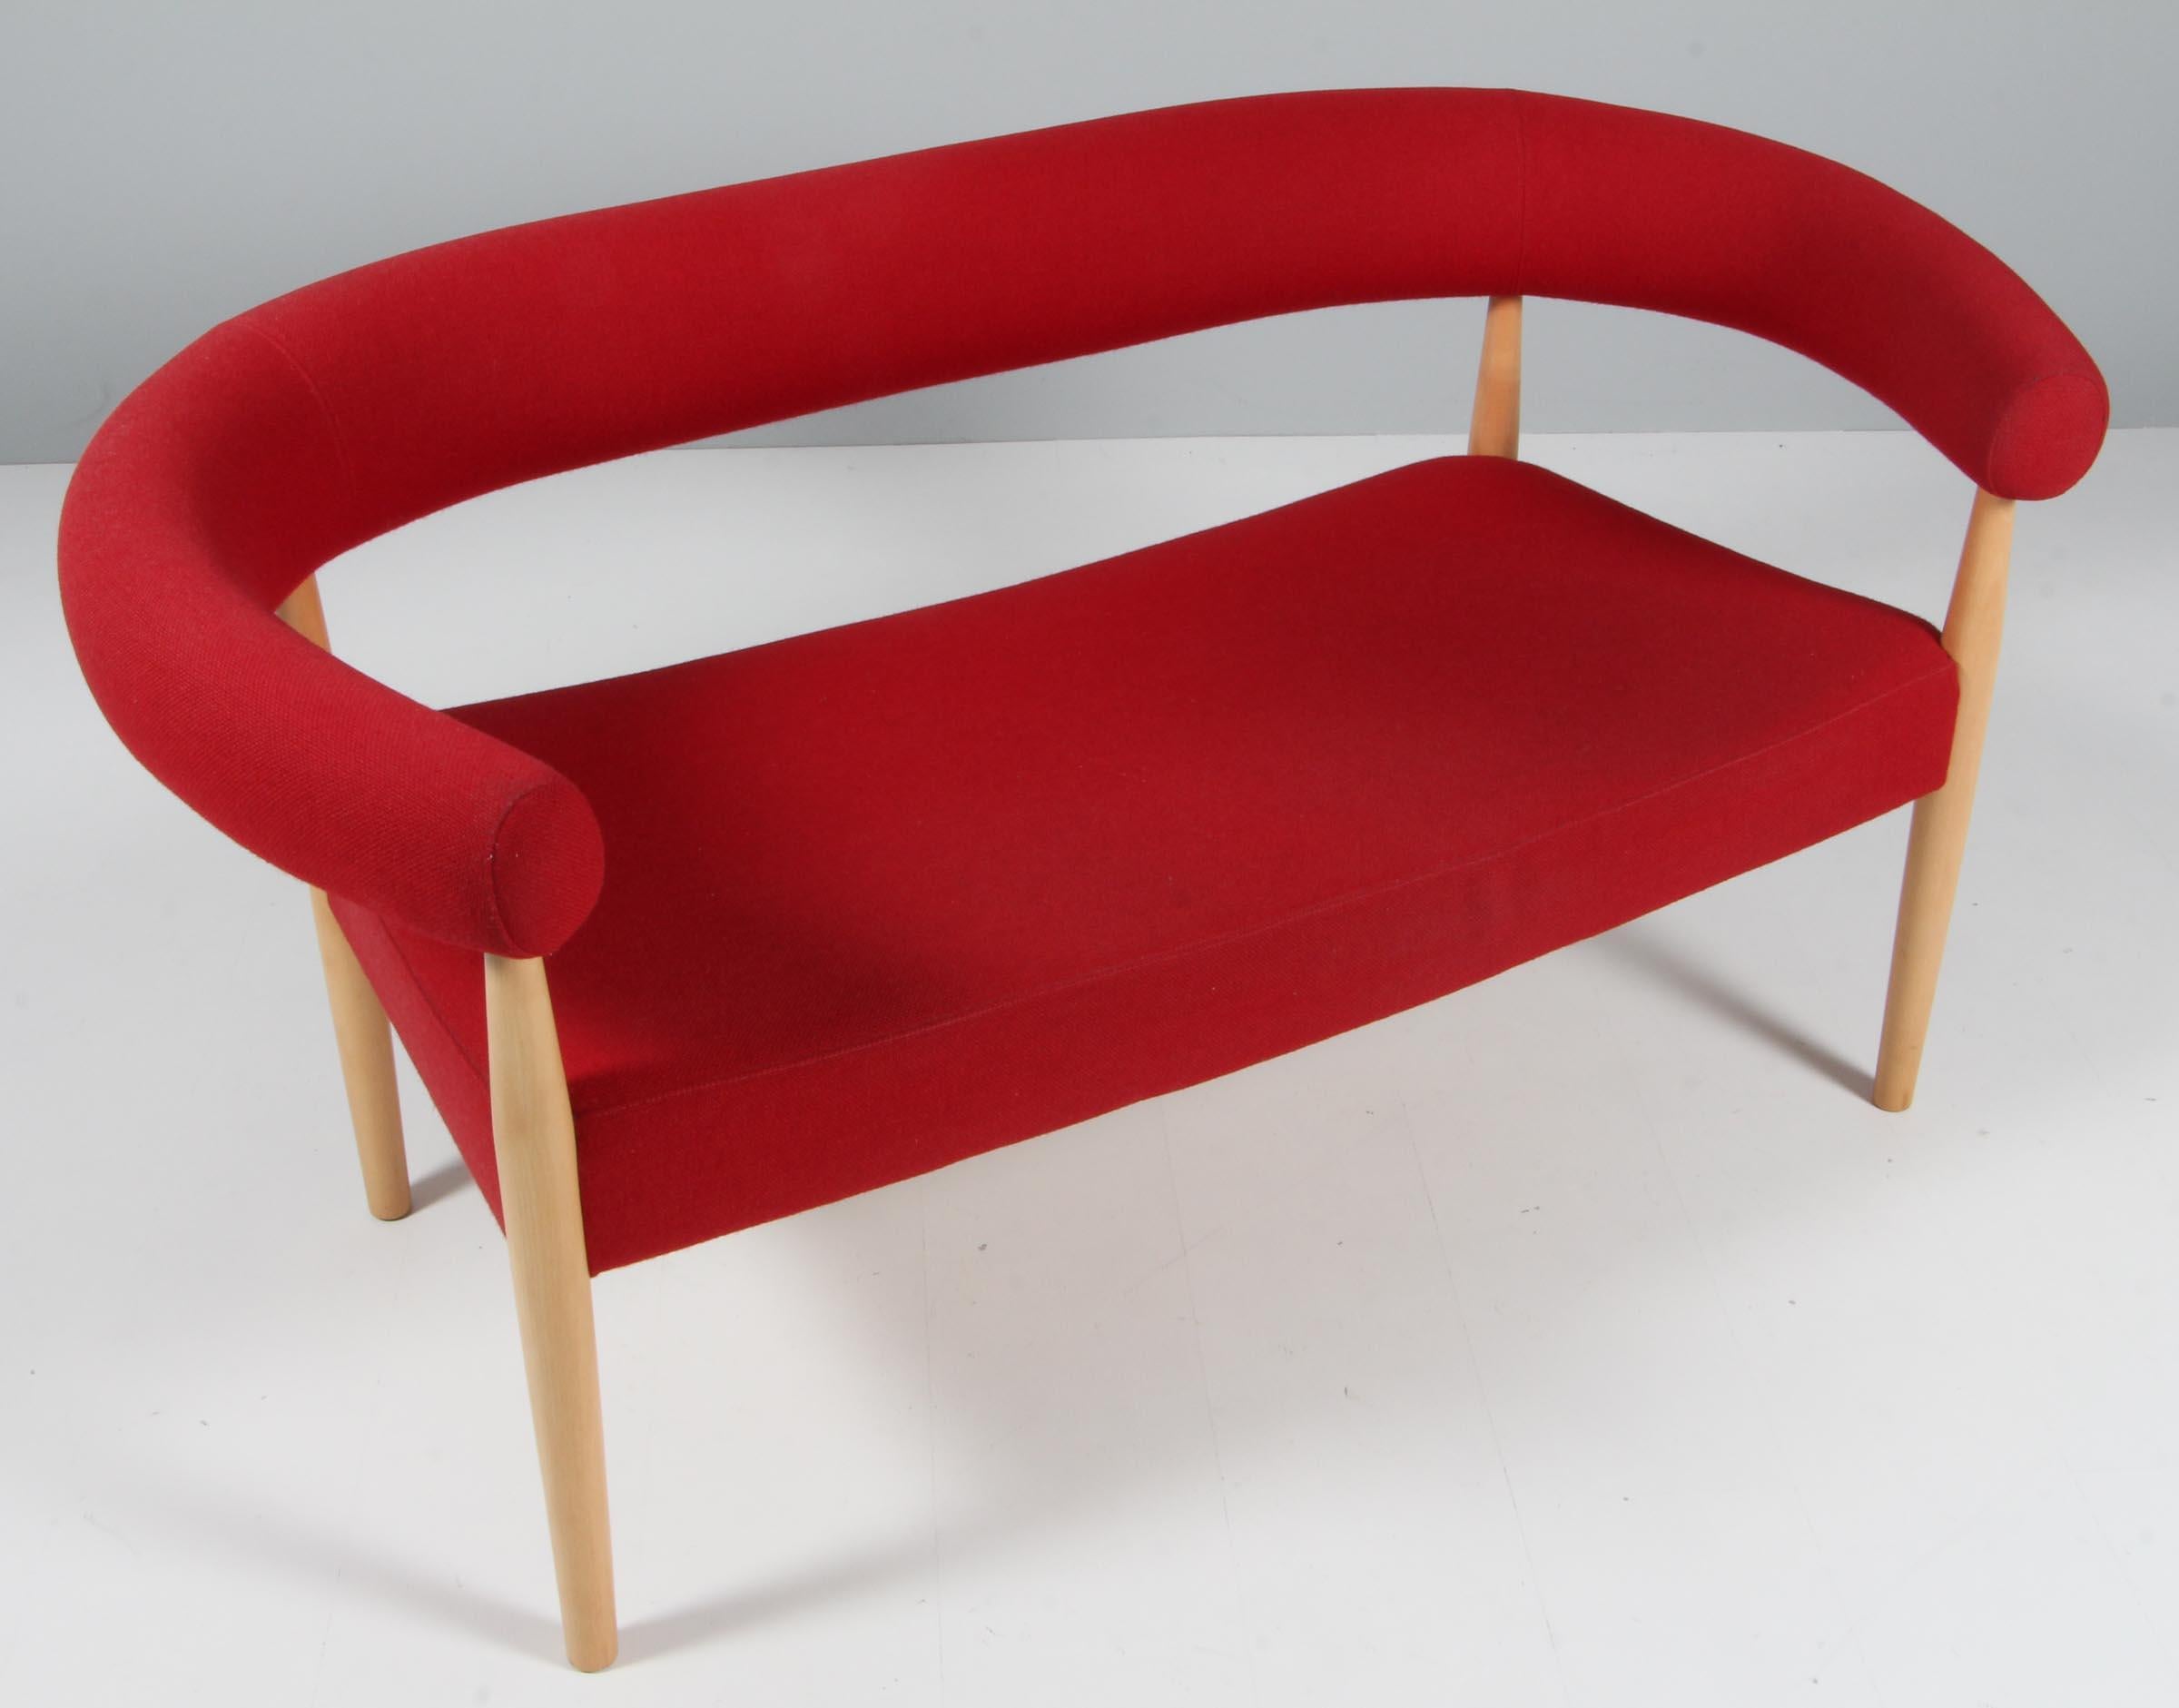 Nanna & Jørgen Ditzel Zweisitzer-Sofa mit rotem Tonus-Wollbezug. Rahmen aus Ahornholz. 

Modell 2612, hergestellt von Fredericia Furniture. Sehr seltenes Modell, das normalerweise nur im Sessel zu sehen ist.